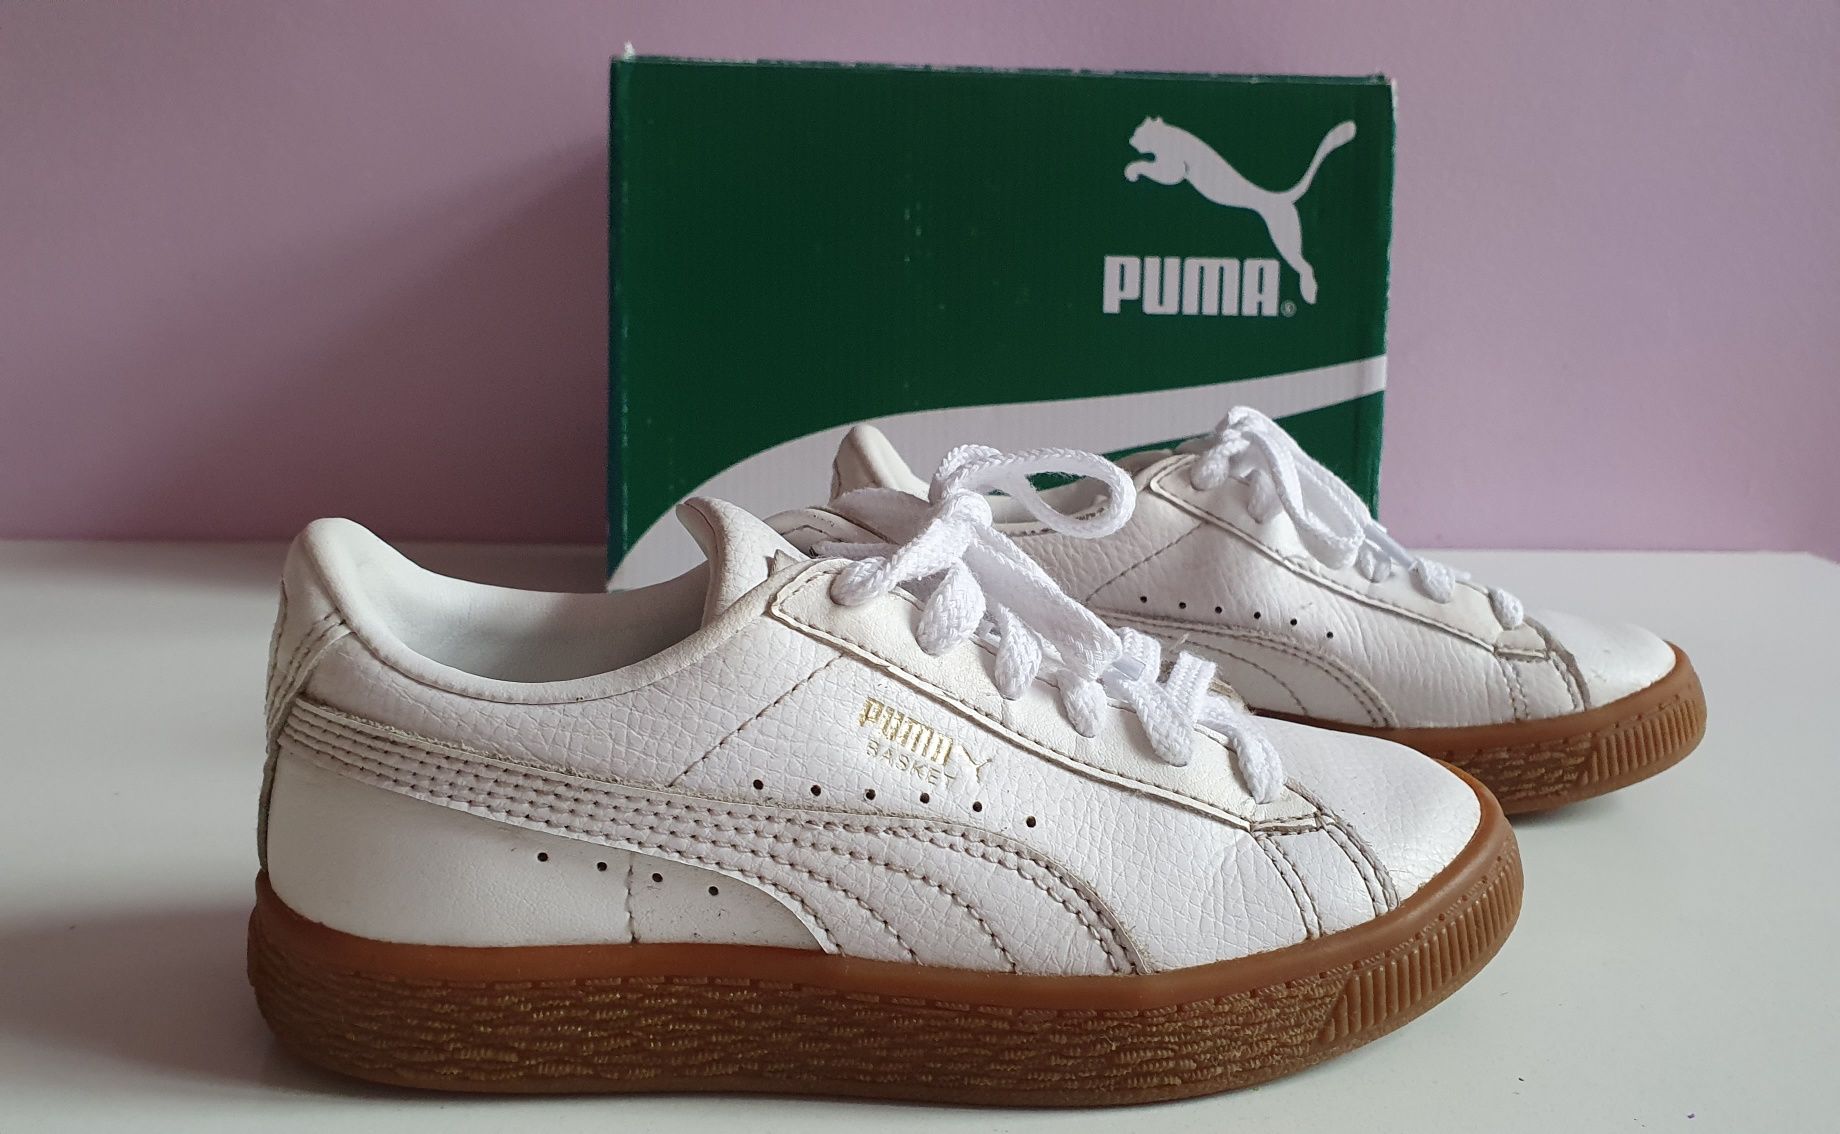 Buty Puma vintage - 31 - 18,5 cm - Basket Classic- białe - jak nowe